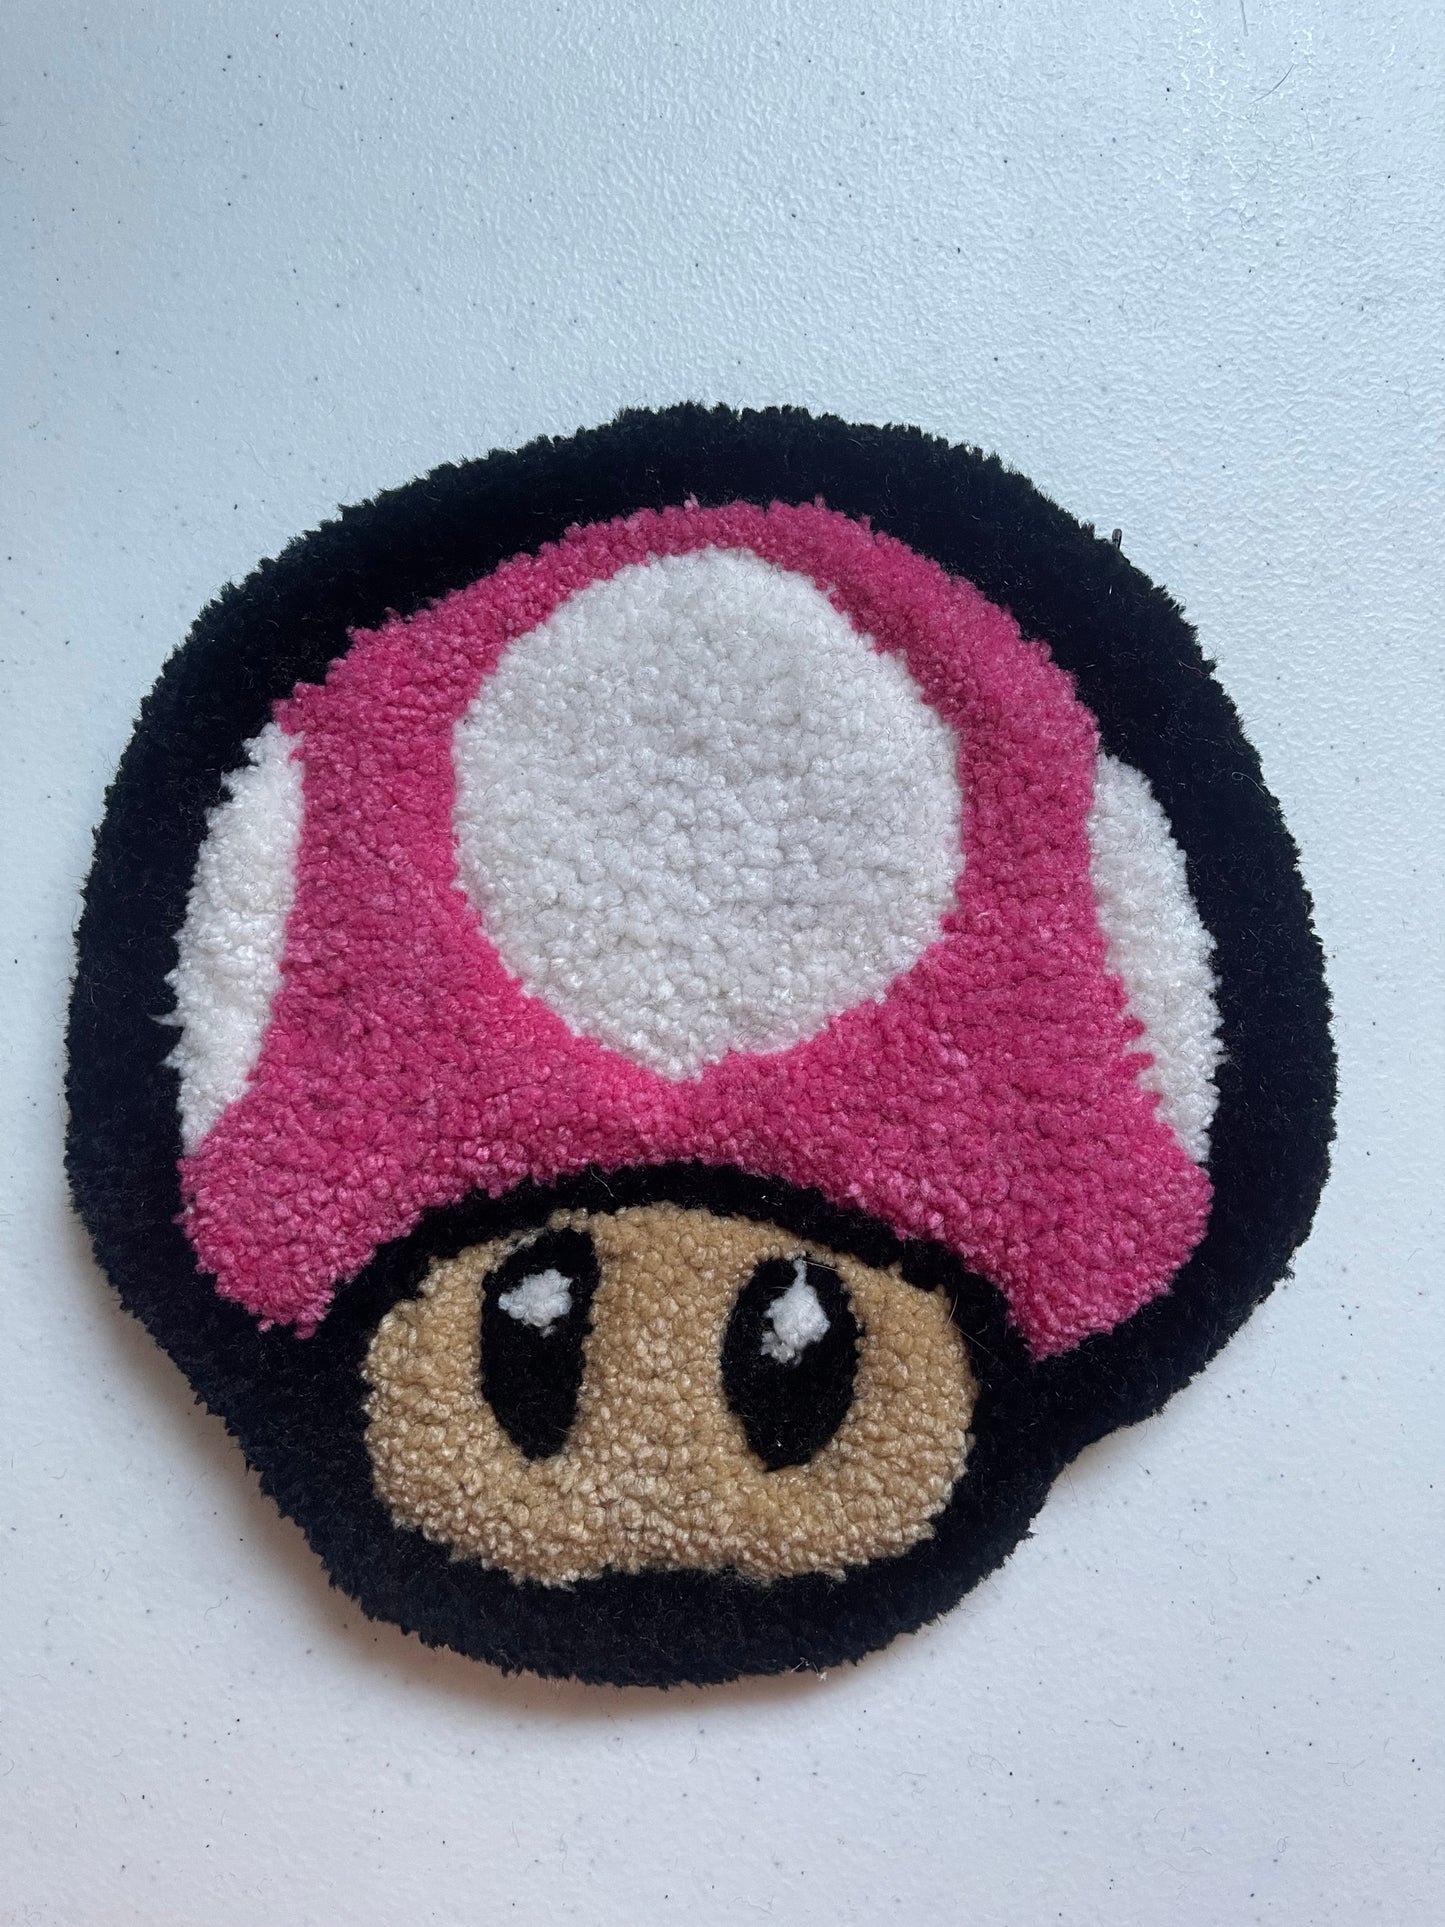 Mario Kart Mini Mushroom